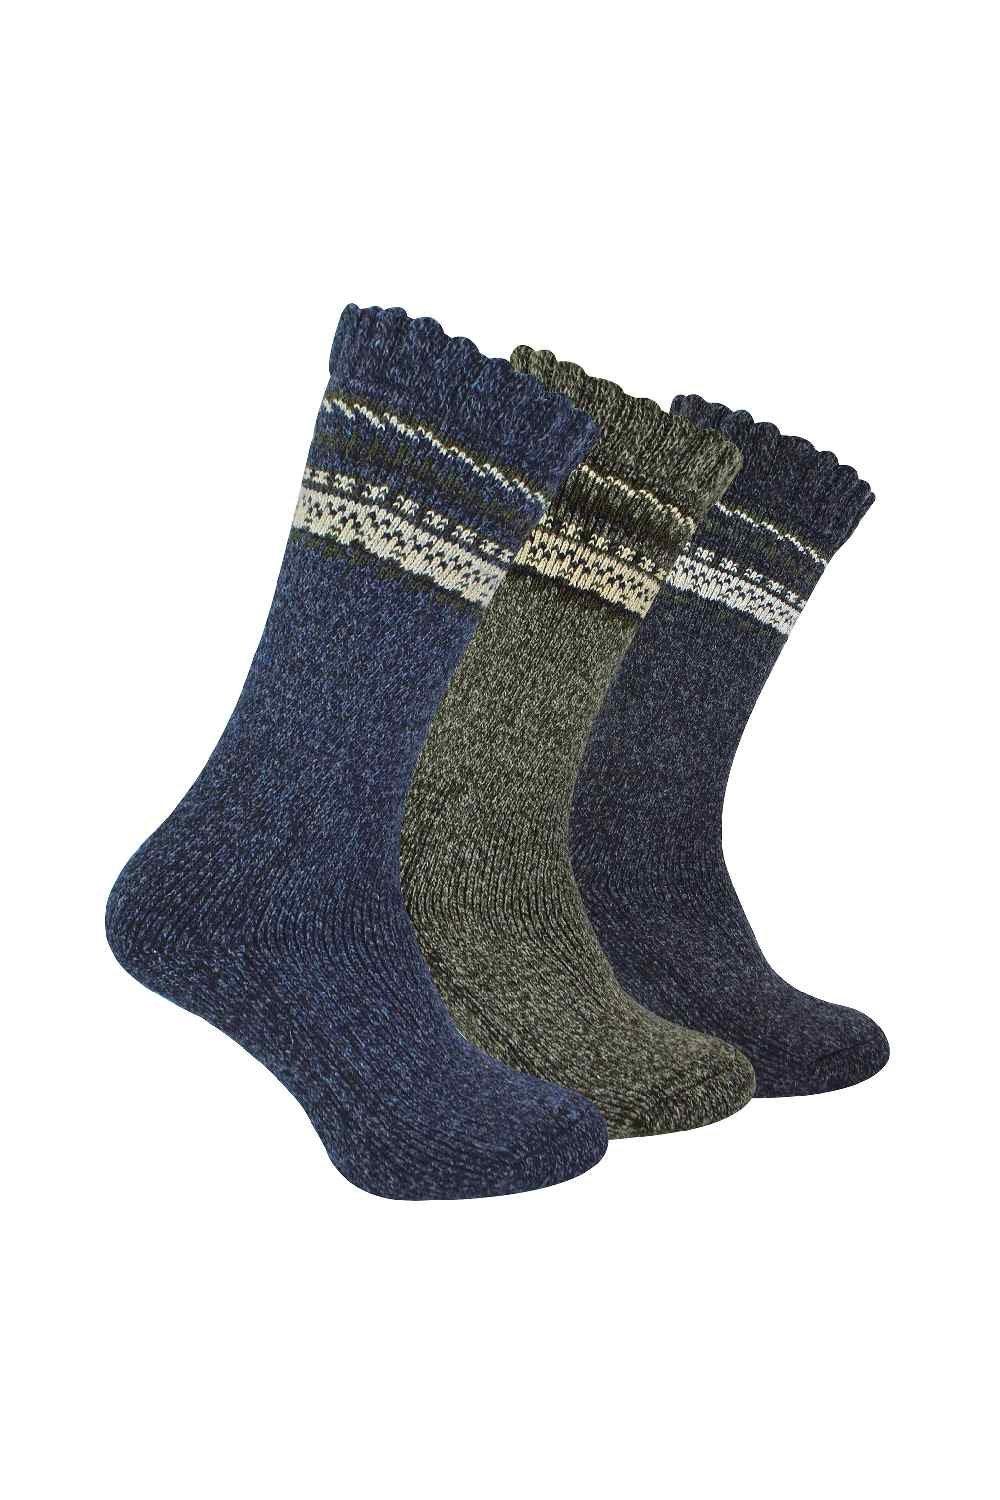 3 Pairs Thick Merino Wool Socks - Outdoor Warm Boot Socks